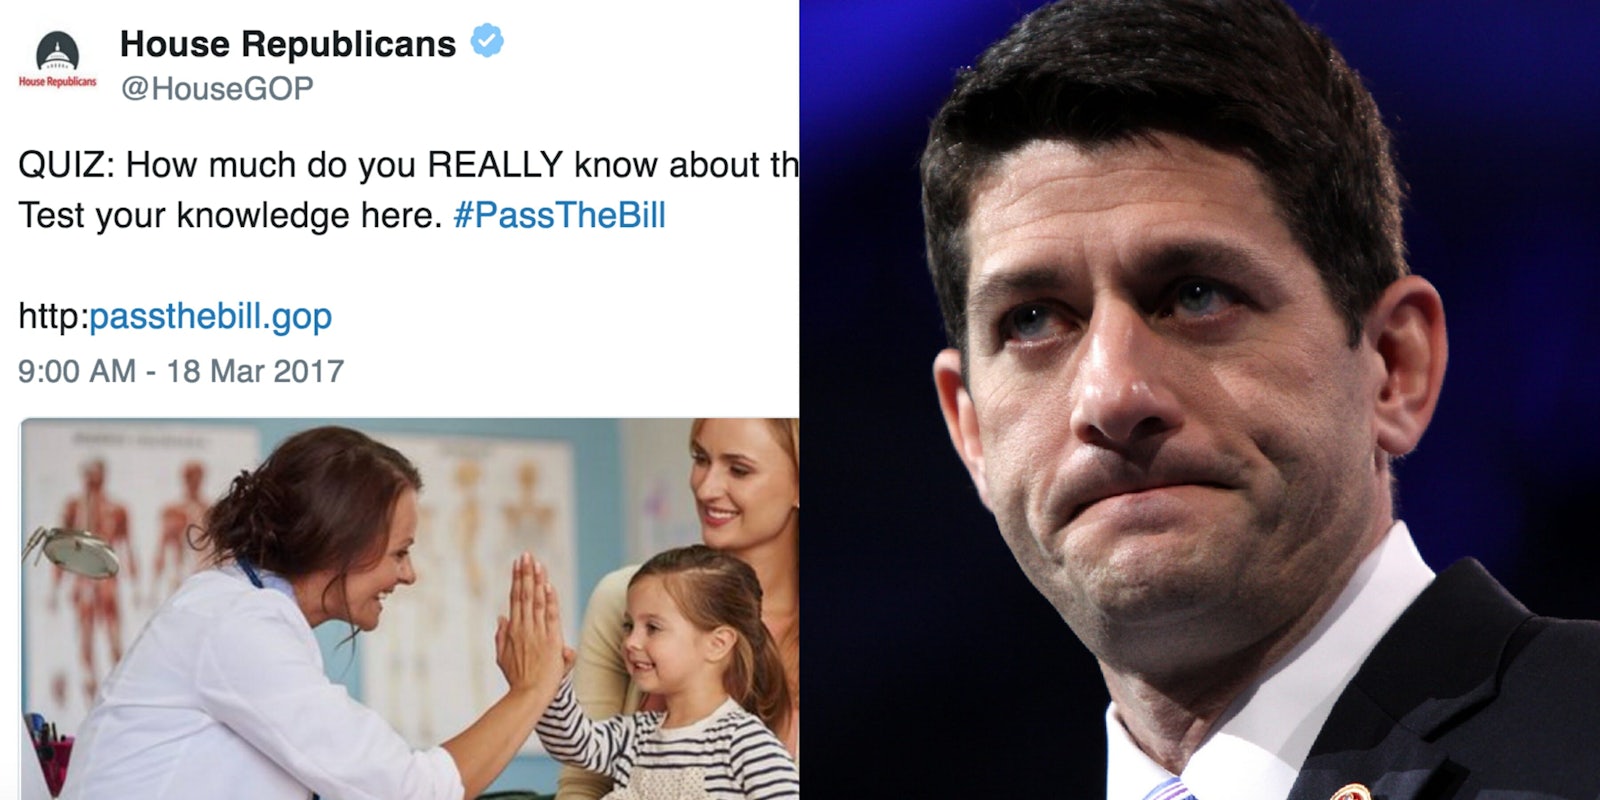 Paul Ryan House GOP Tweet with AHCA Typo